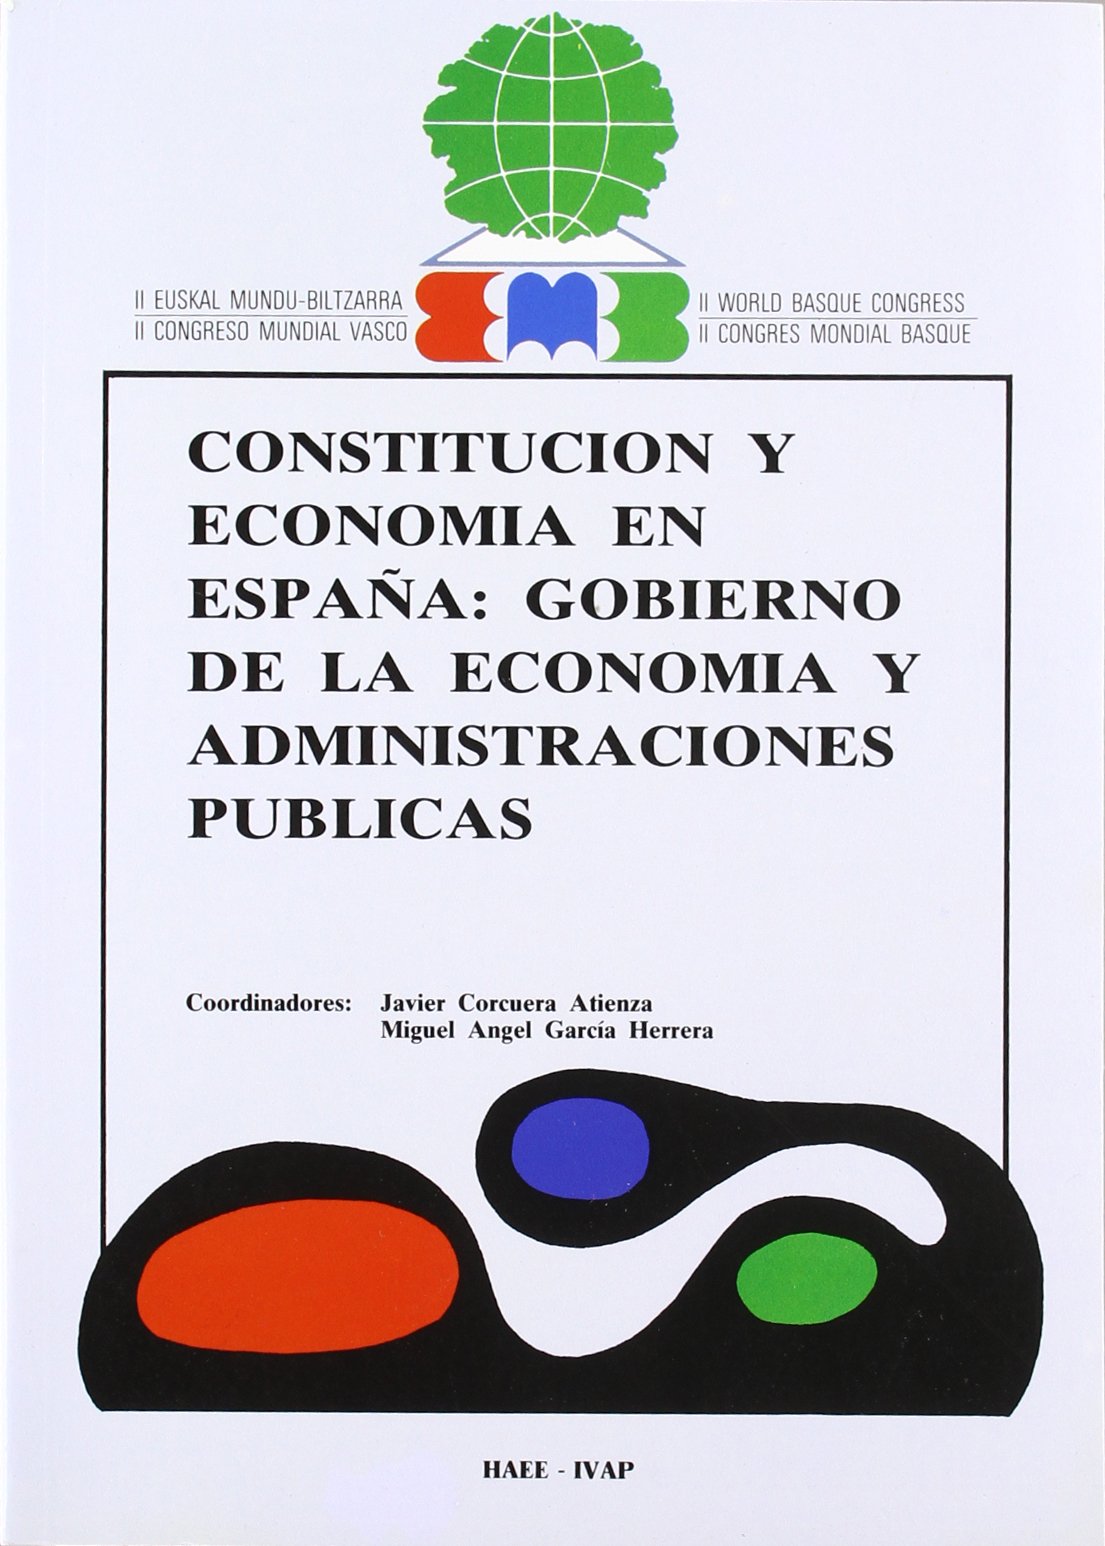 Imagen de portada del libro Constitución y economía en España